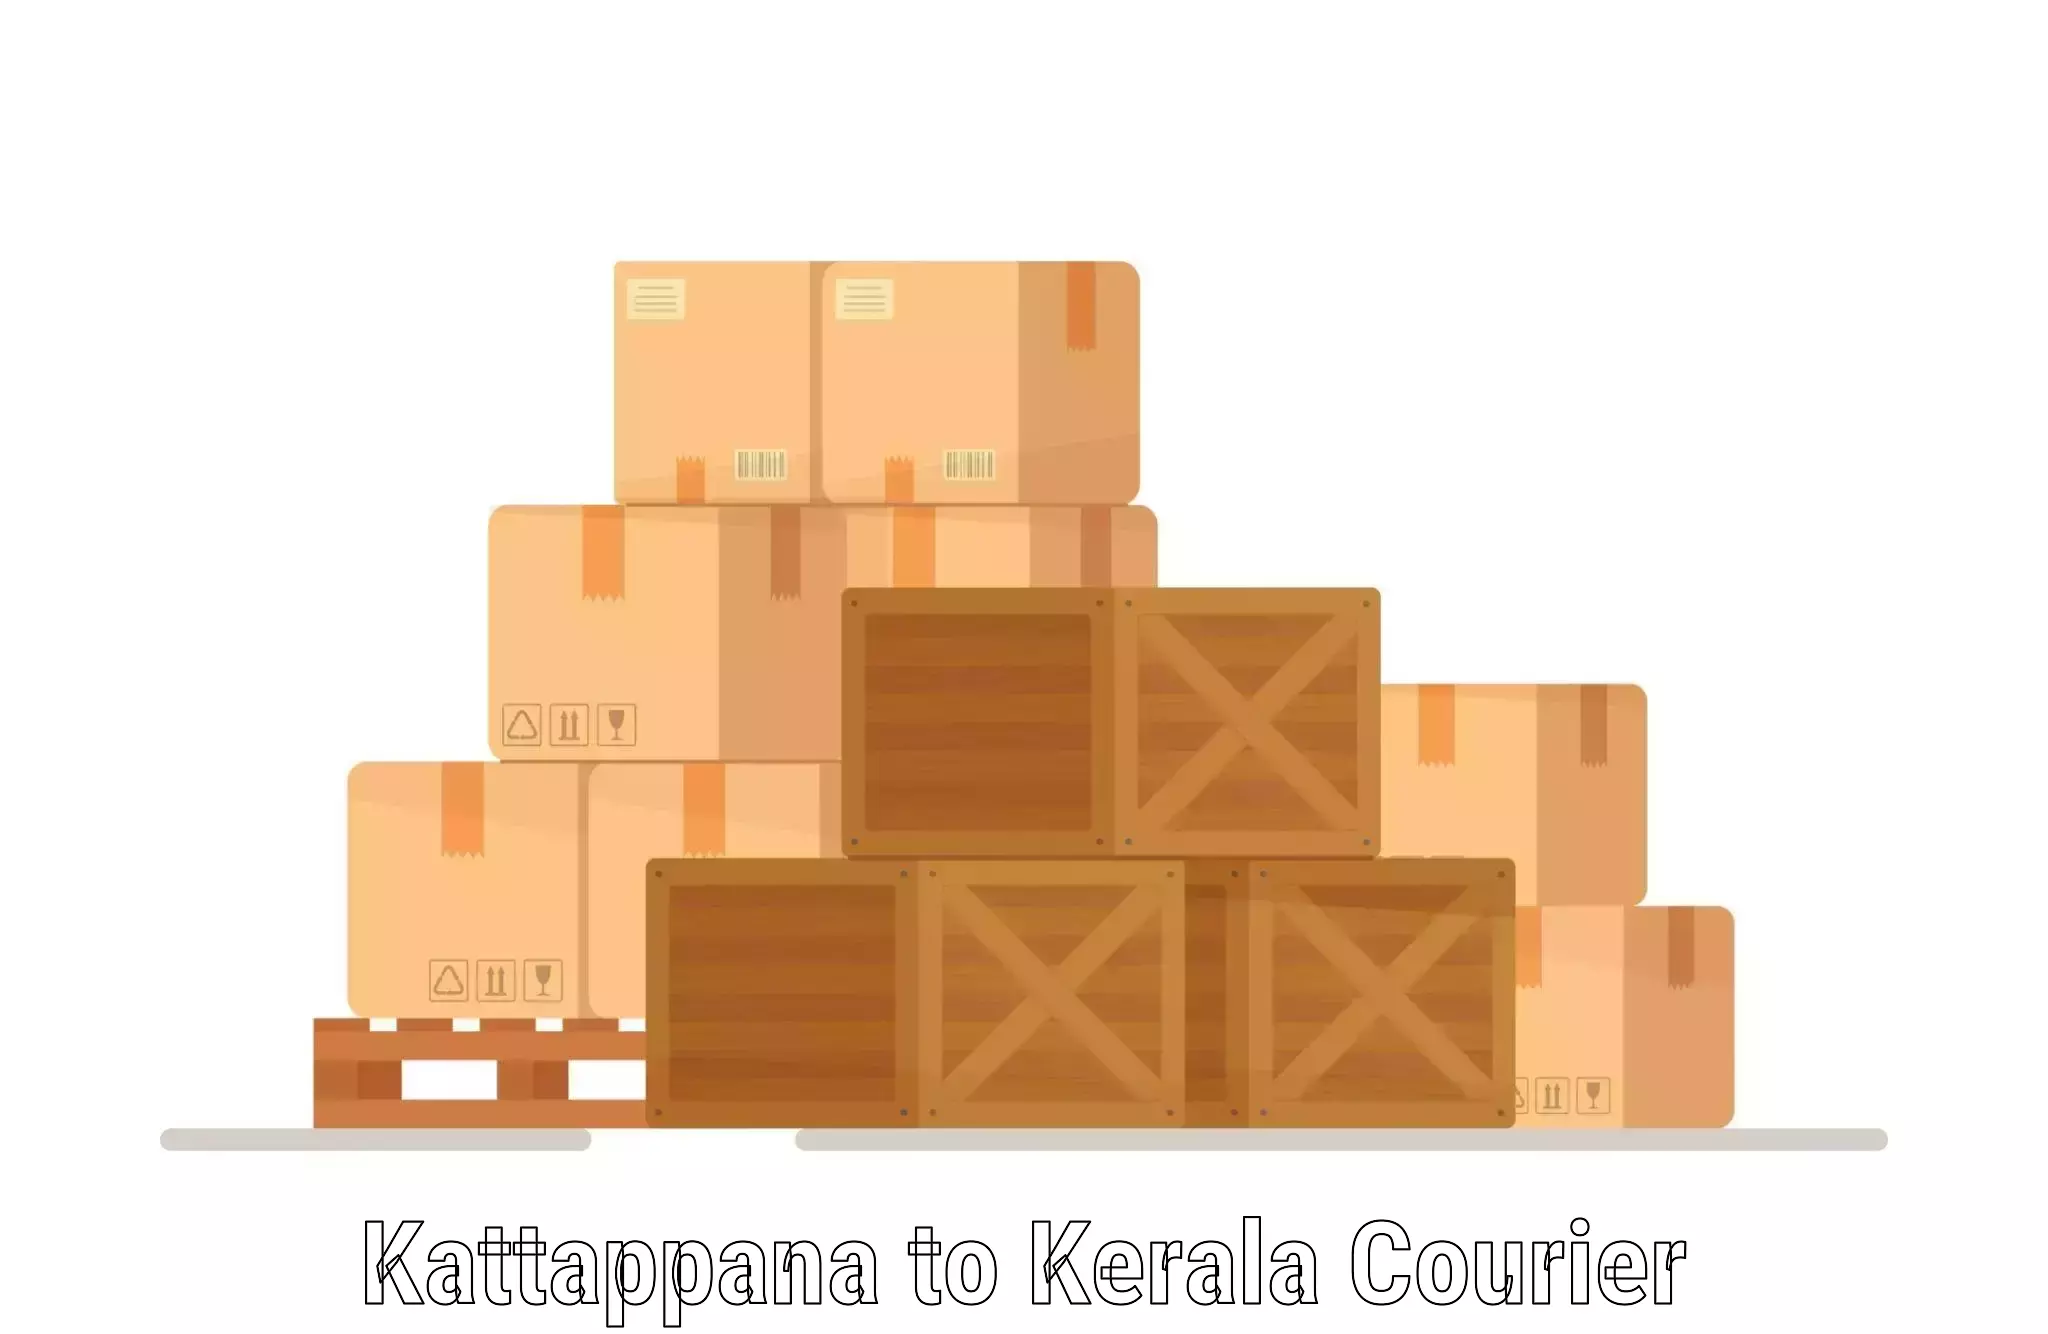 Customer-centric shipping Kattappana to Tirur